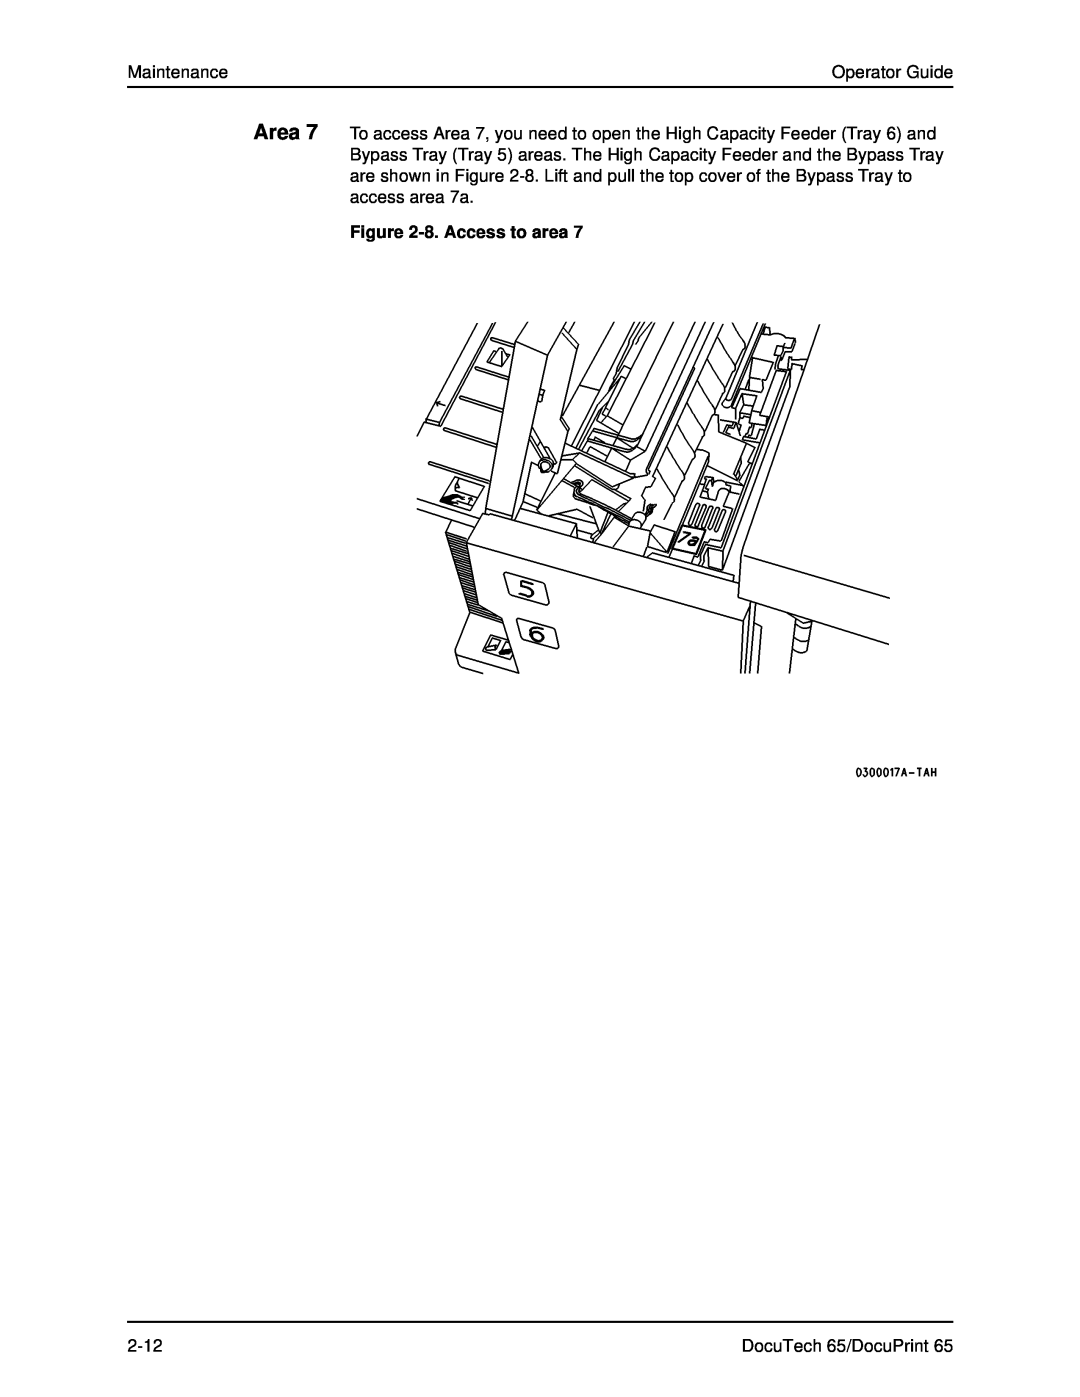 Xerox DOCUTECH 65 manual Maintenance, Operator Guide, 8. Access to area, 2-12, DocuTech 65/DocuPrint 